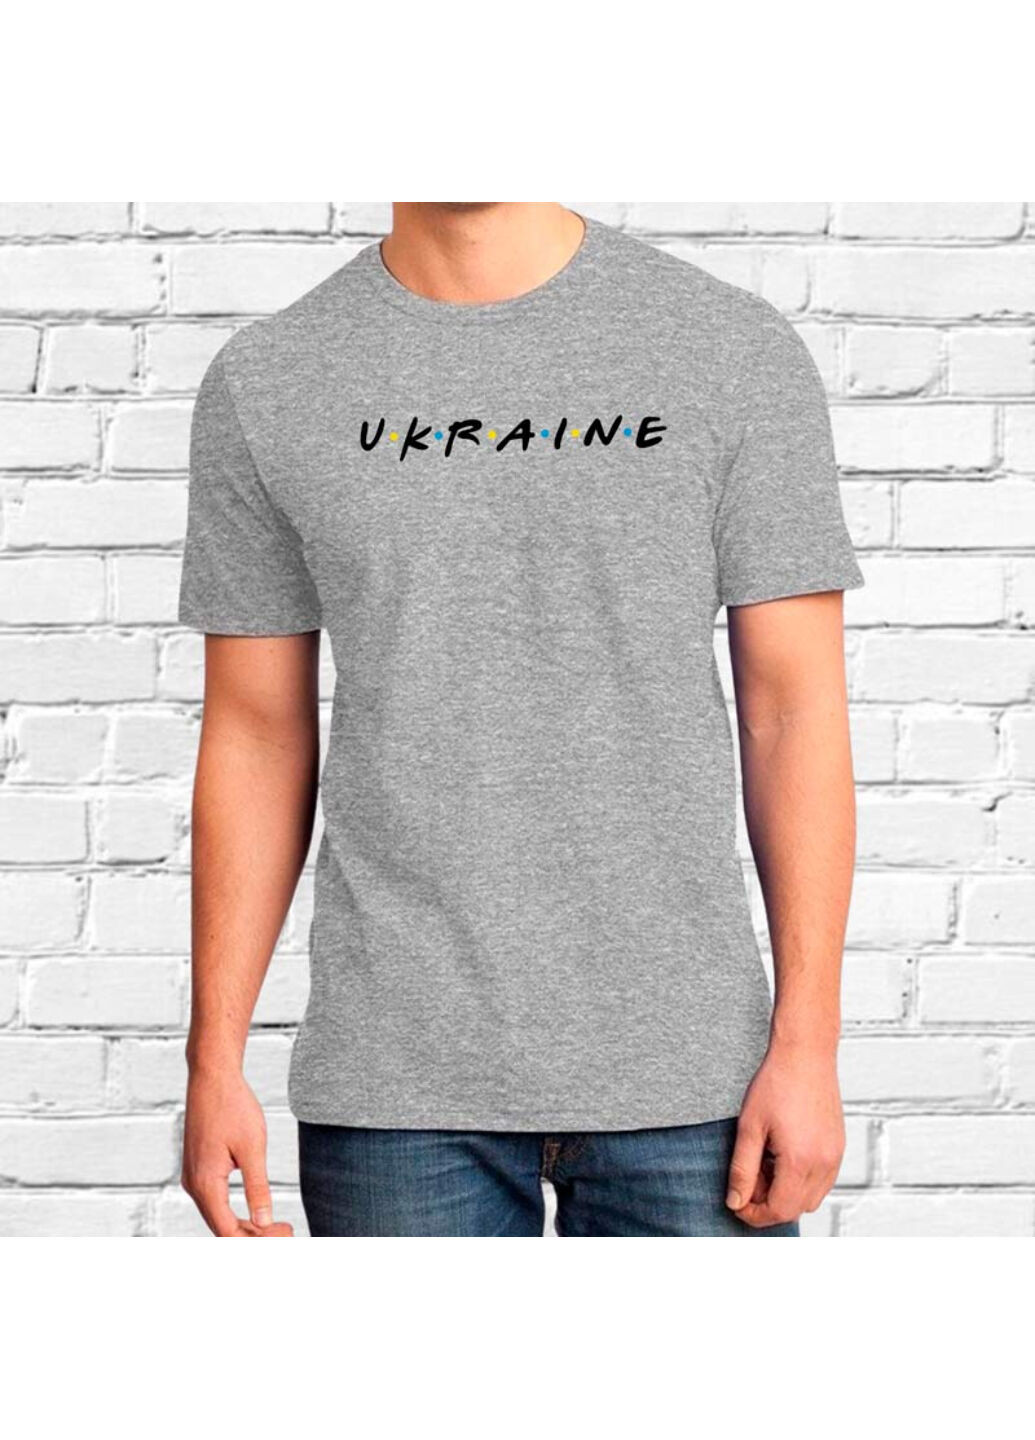 Сіра футболка сіра з вишивкою ukraine чоловіча сірий xl No Brand